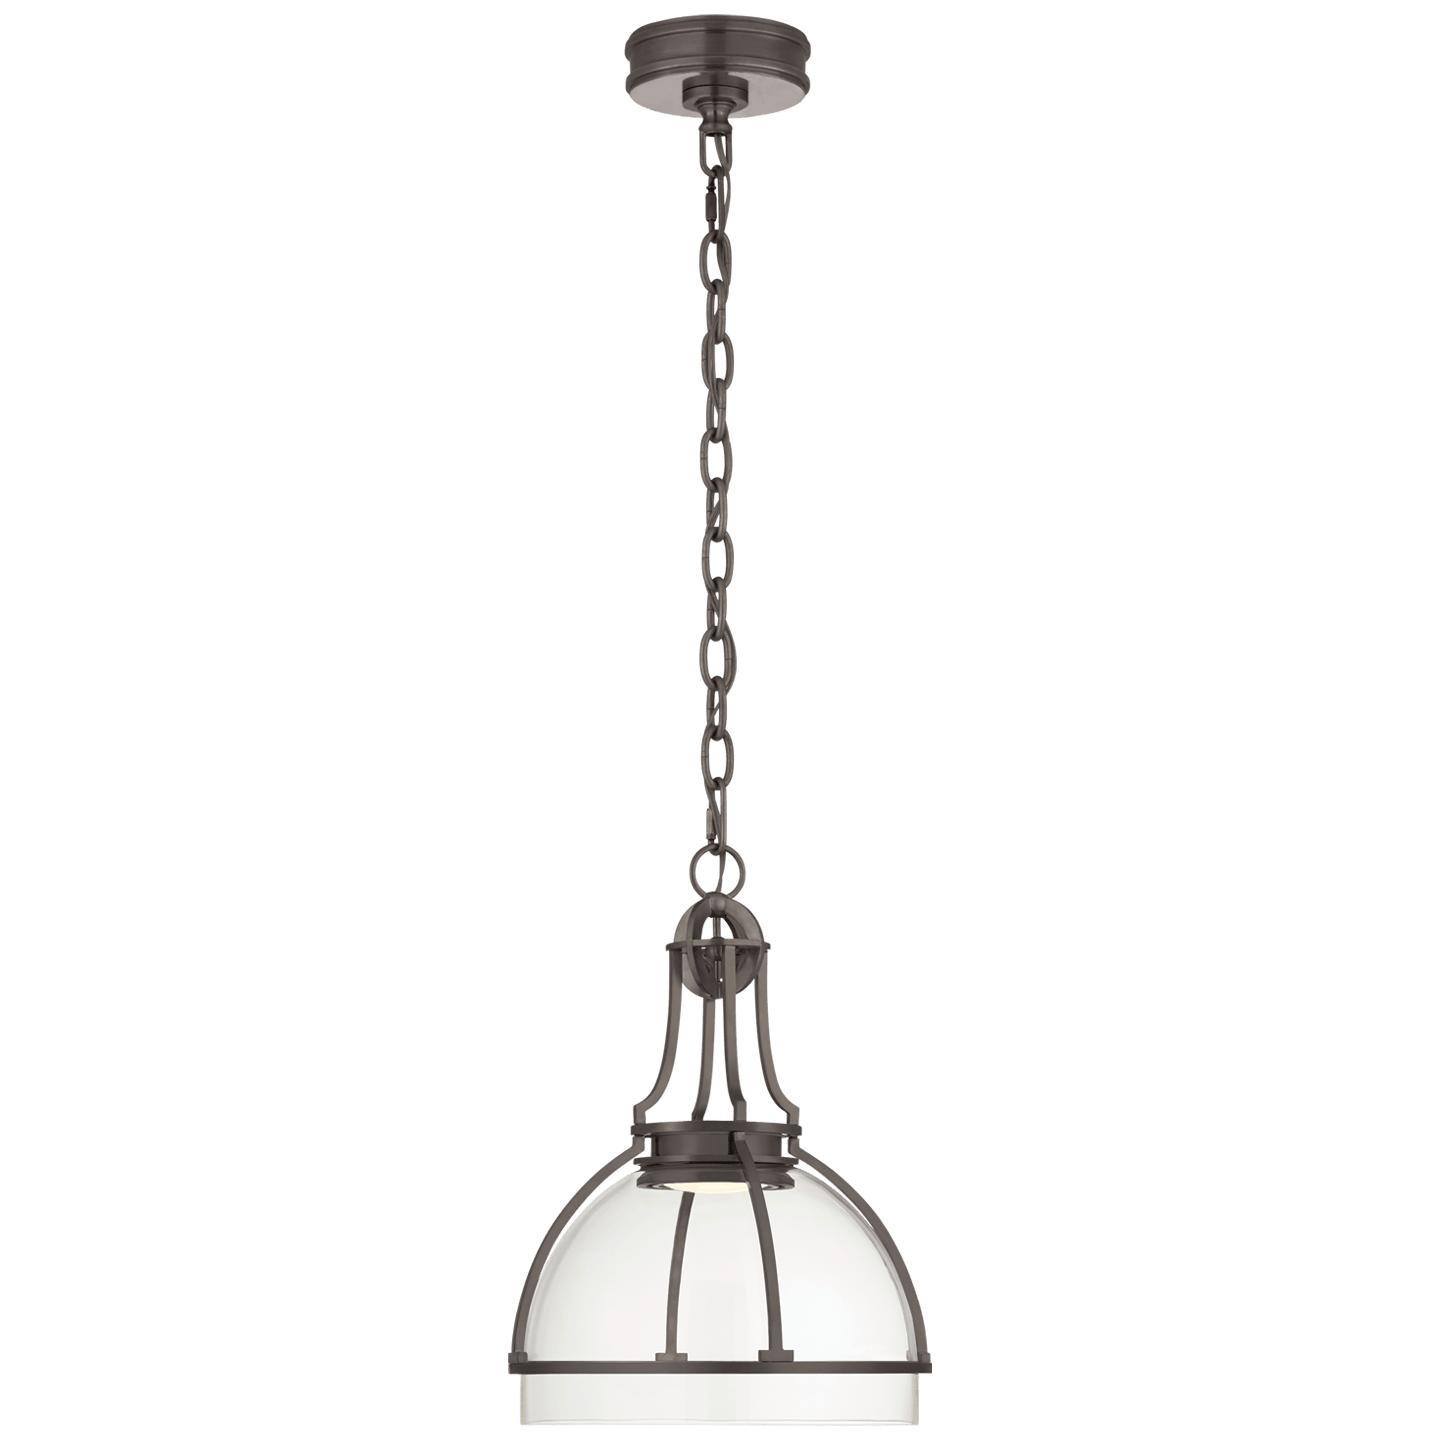 Купить Подвесной светильник Gracie Medium Dome Pendant в интернет-магазине roooms.ru